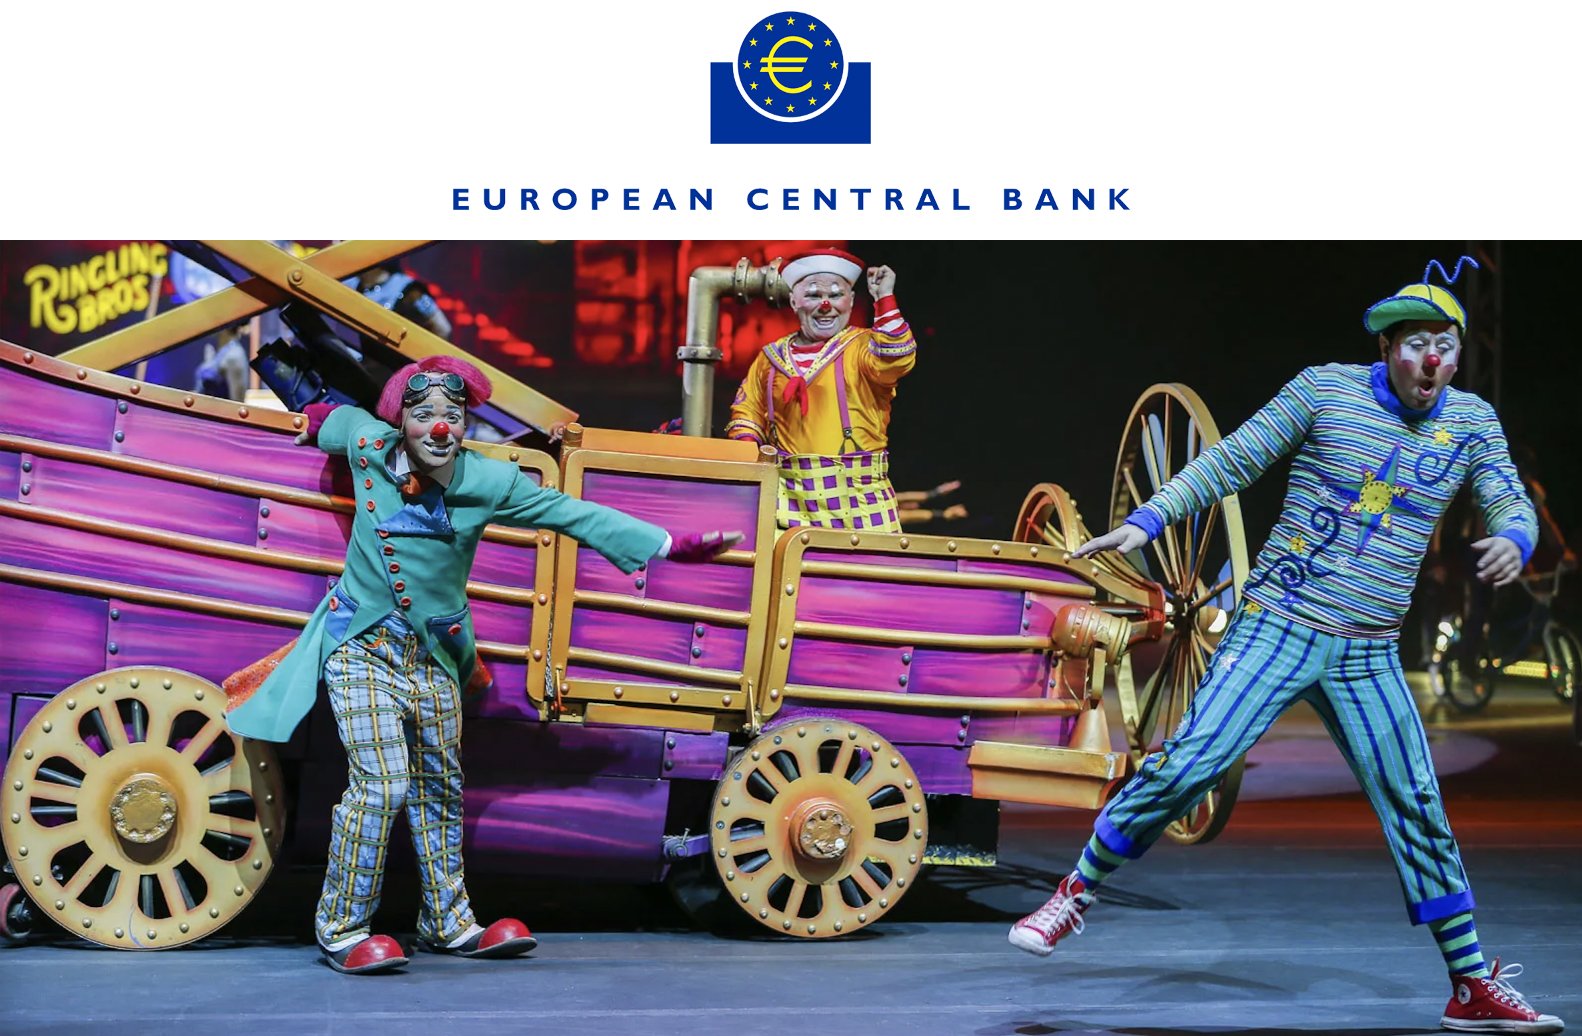 یکی دیگر از کاربران X با ارسال توییتی که بانک مرکزی اروپا را به عنوان دلقک های یک سیرک نشان می داد، احساسات خود را به وضوح بیان کرد.